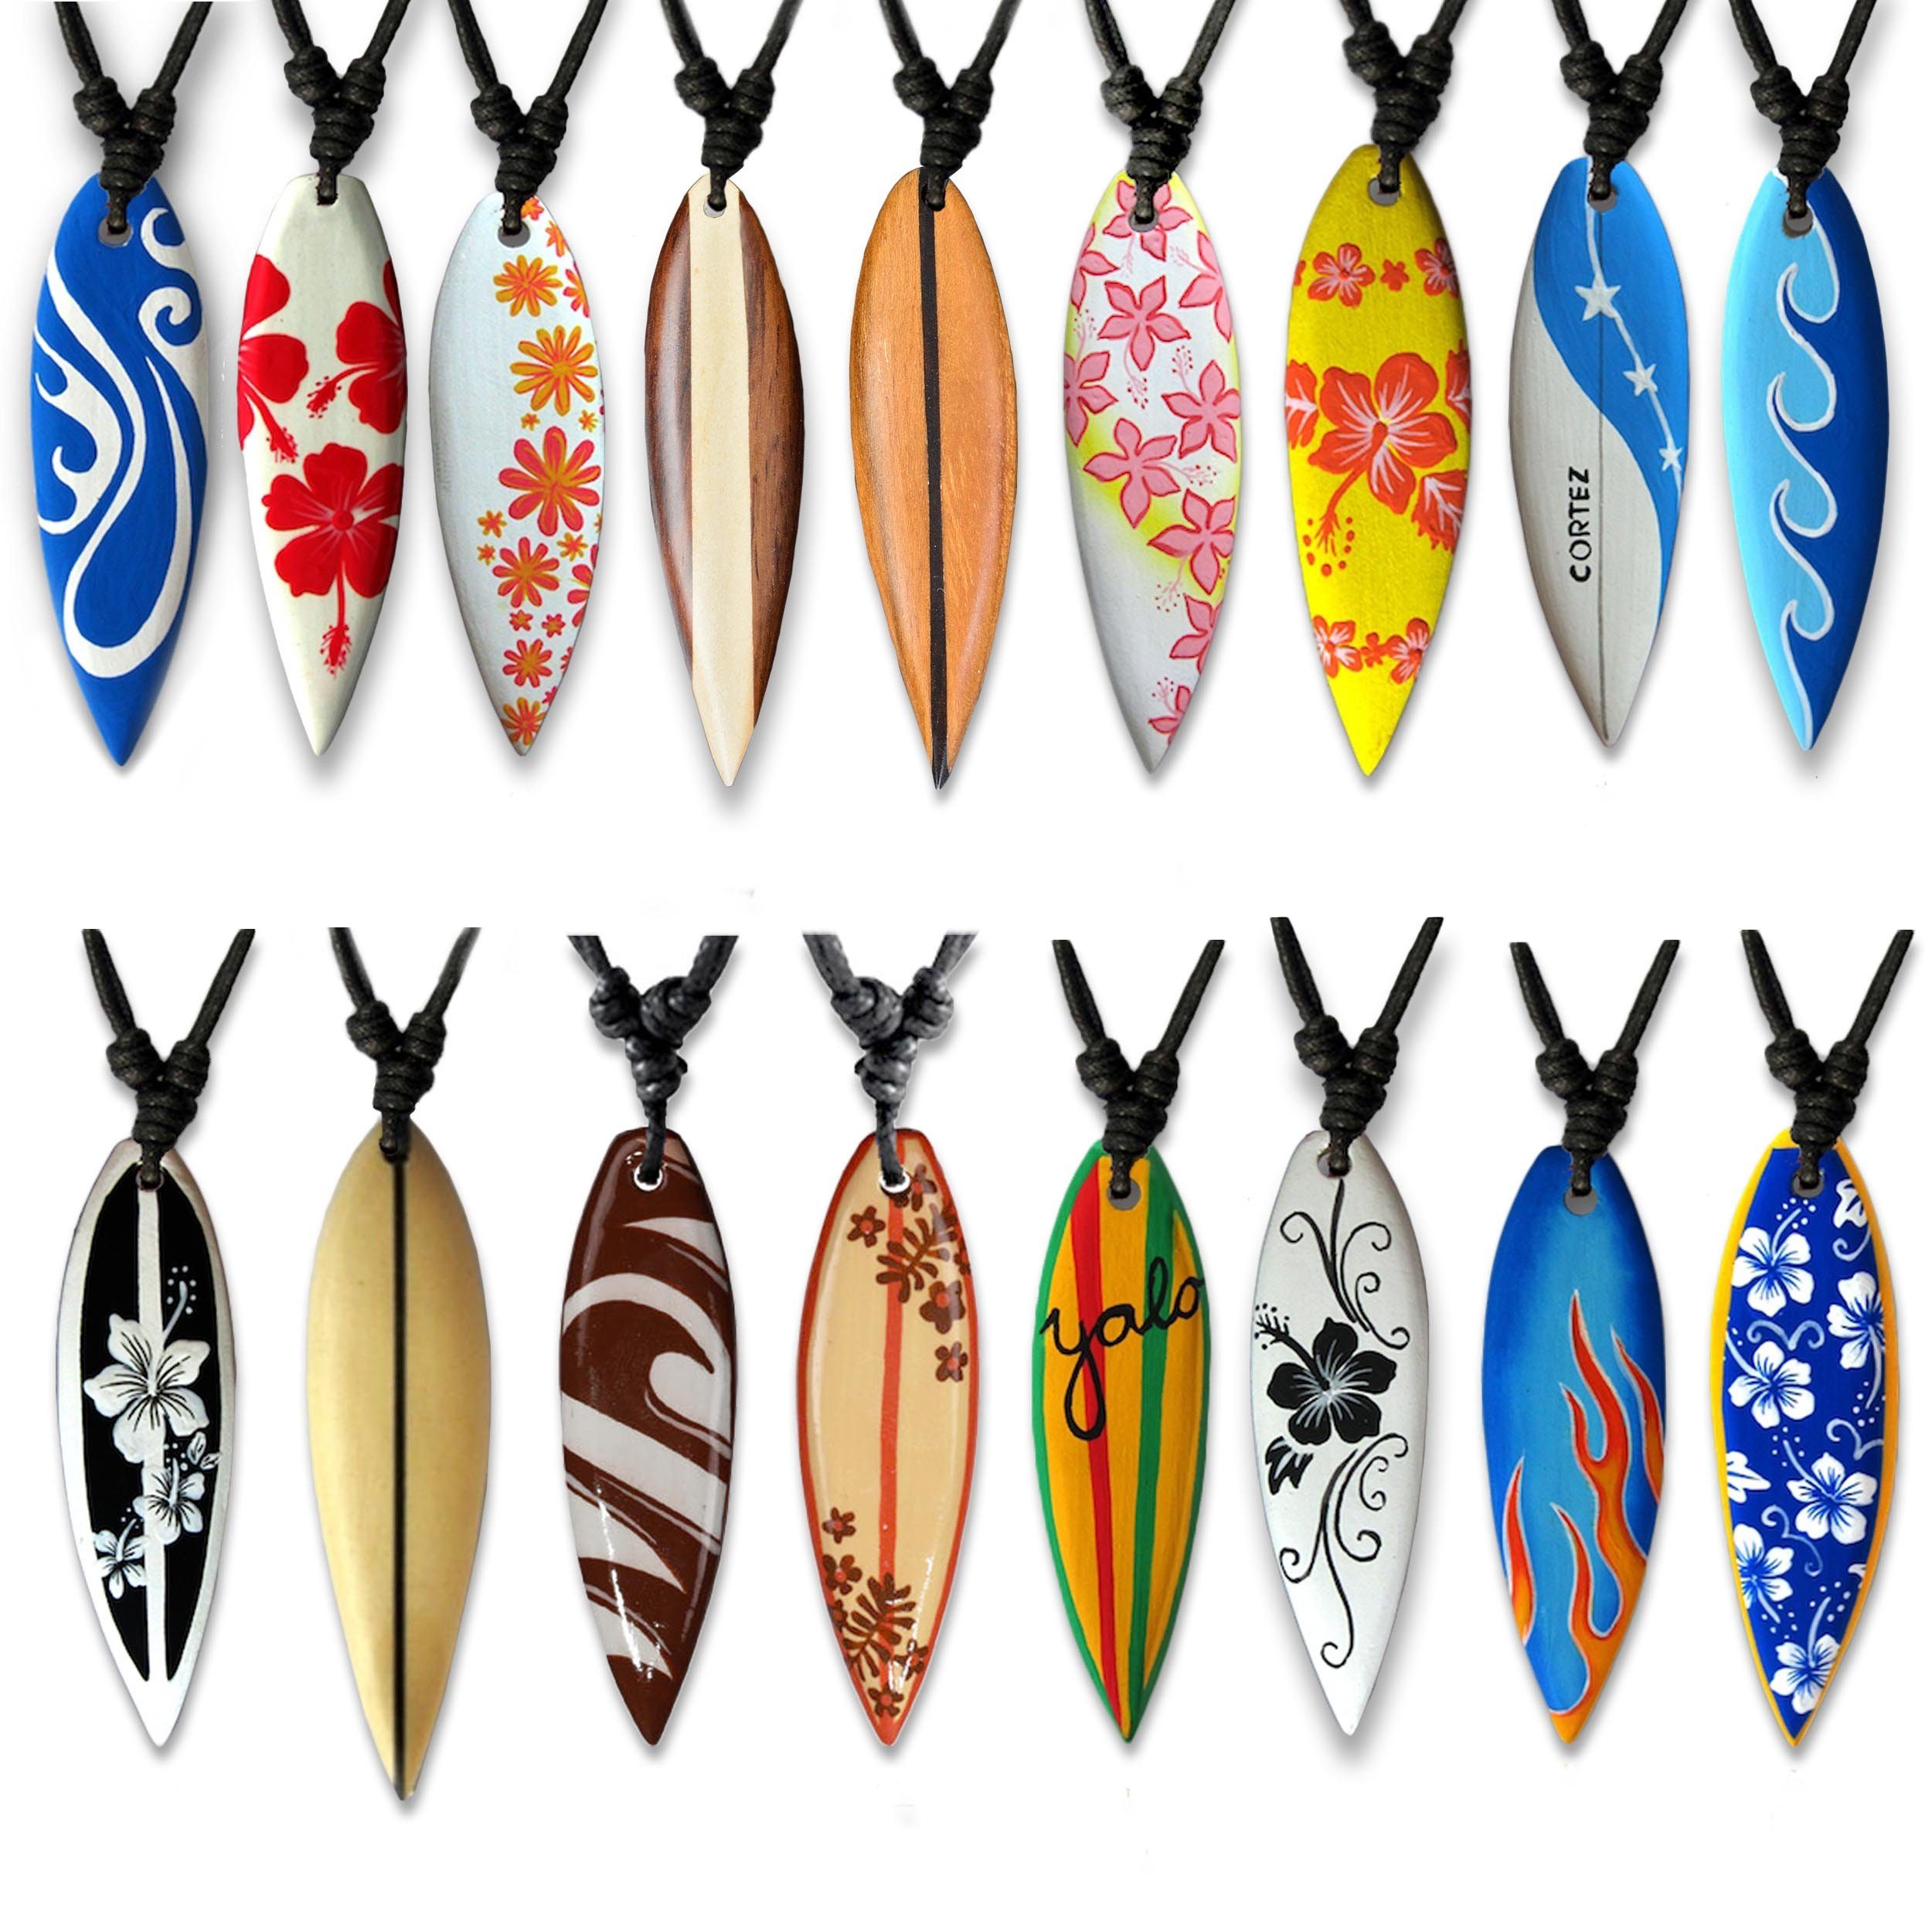 viva-adorno Holzkette Blume Designs, Hibiskus Flammen Beige Kette Halskette Surfer Surfbrett mit Holz Anhänger Surferkette Wellen Yolo verschiedene Hawaii